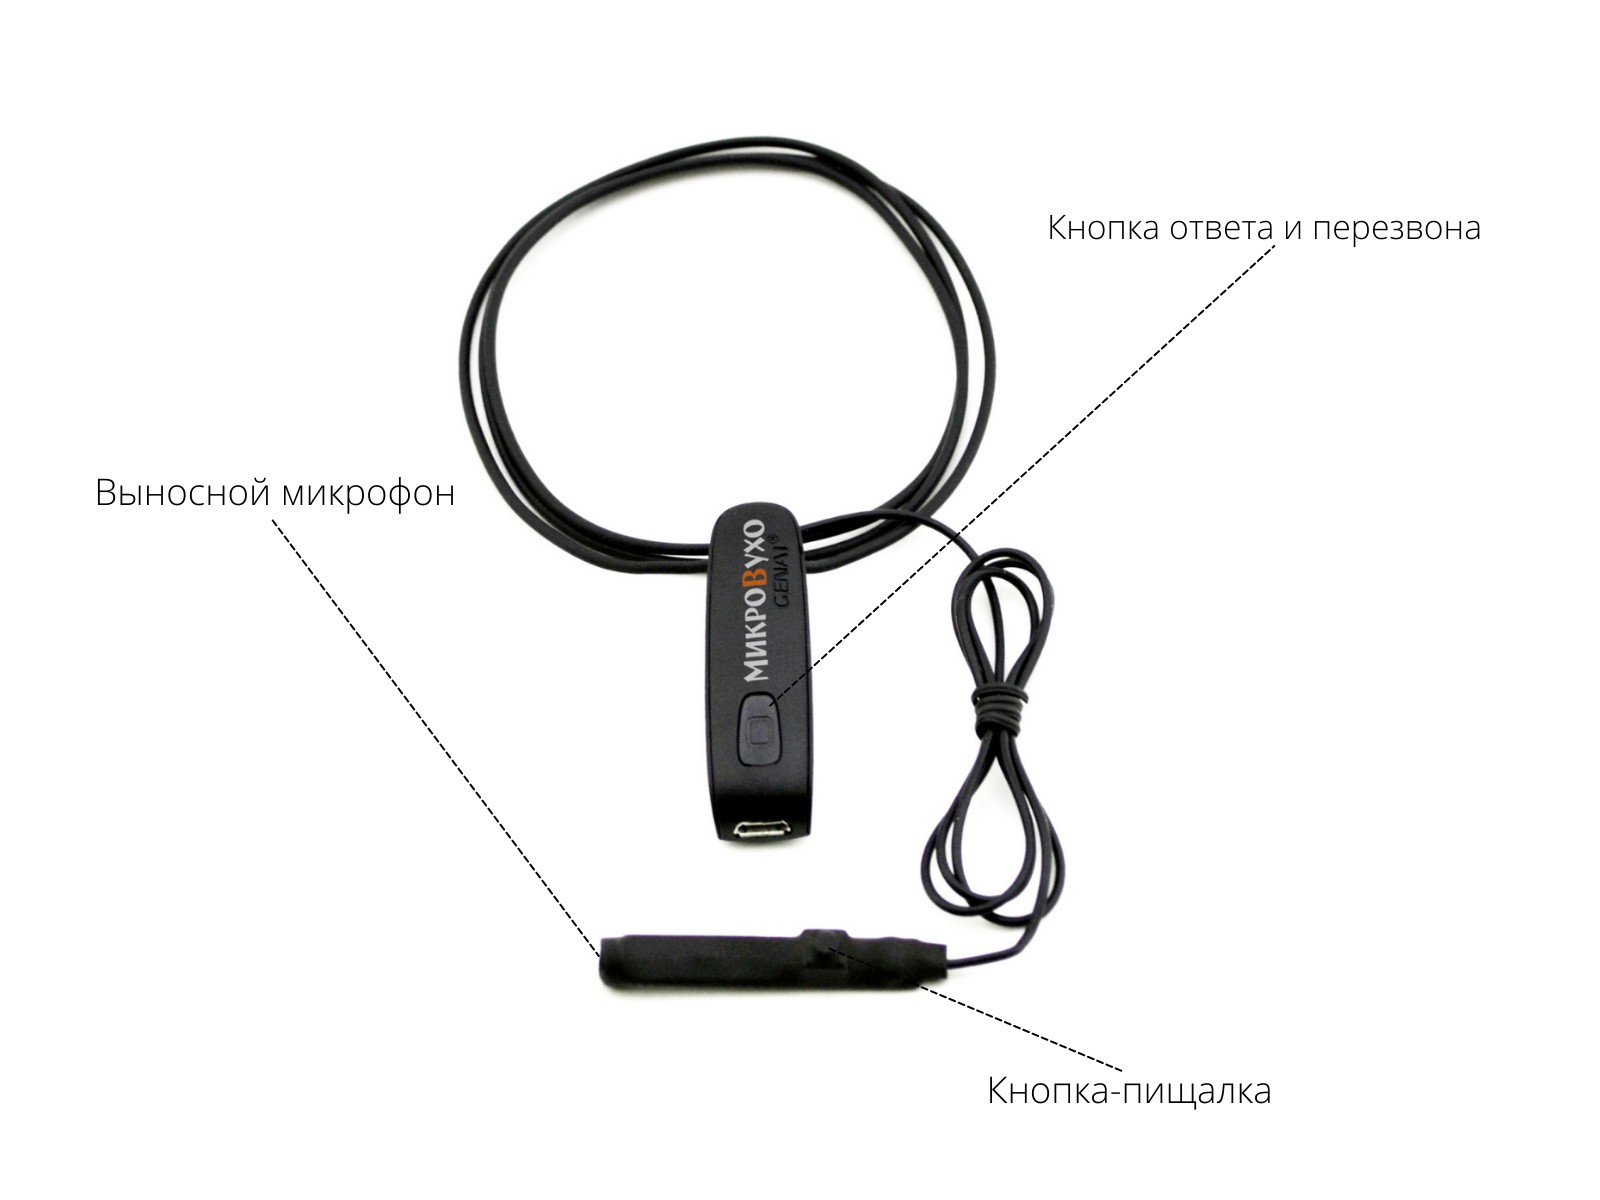 Универсальная гарнитура Bluetooth Basic с капсулой Nano 4 мм и магнитами 2 мм - изображение 7